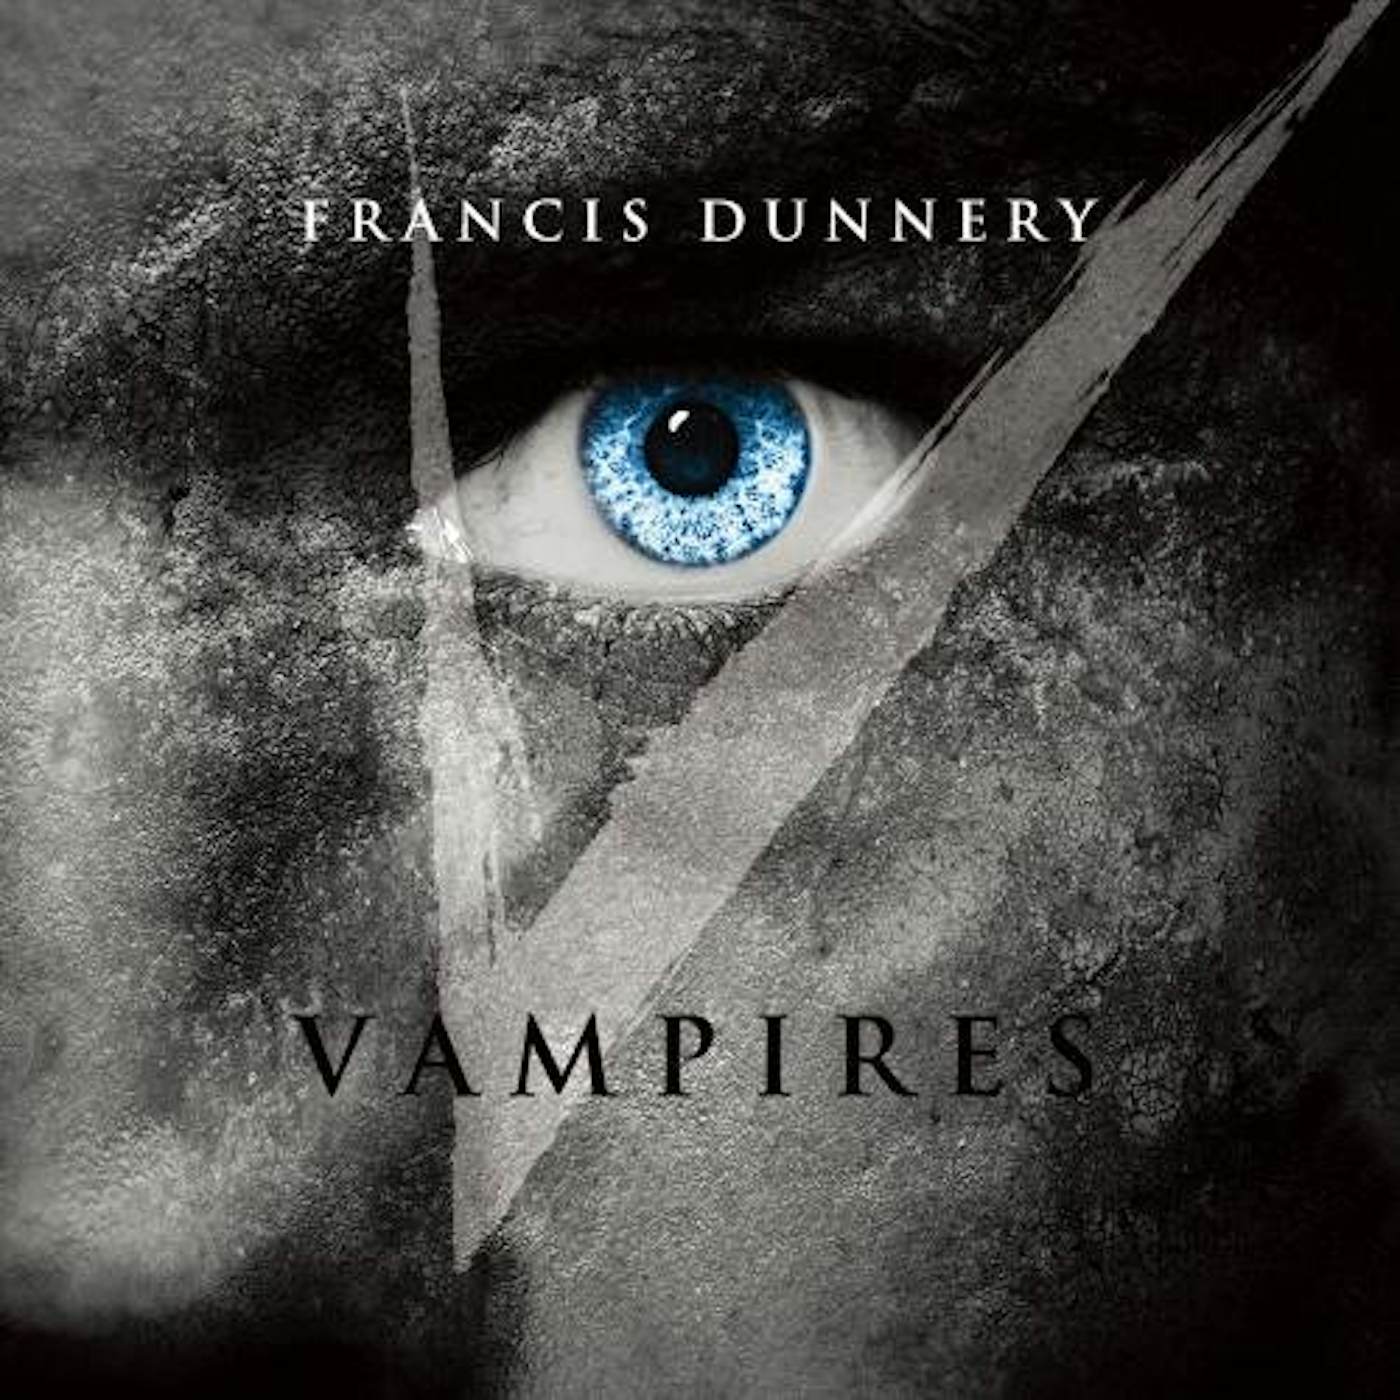 Francis Dunnery VAMPIRES CD